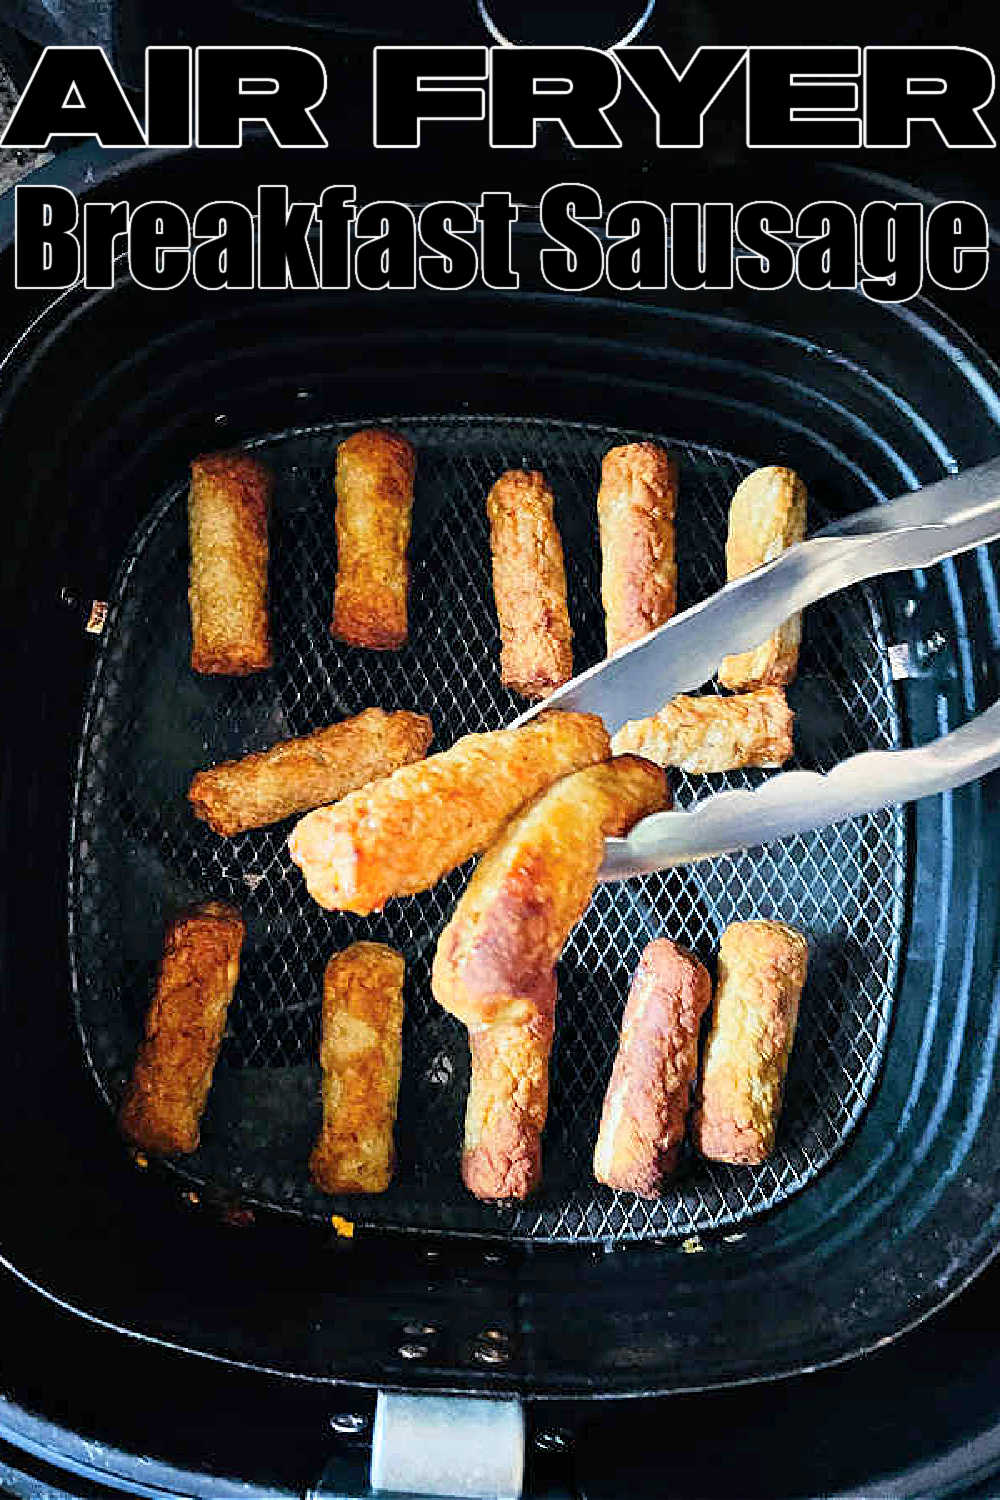 Breakfast Sausage in Air Fryer | Foodtastic Mom #airfryerrecipes #breakfastsausageinairfryer via @foodtasticmom